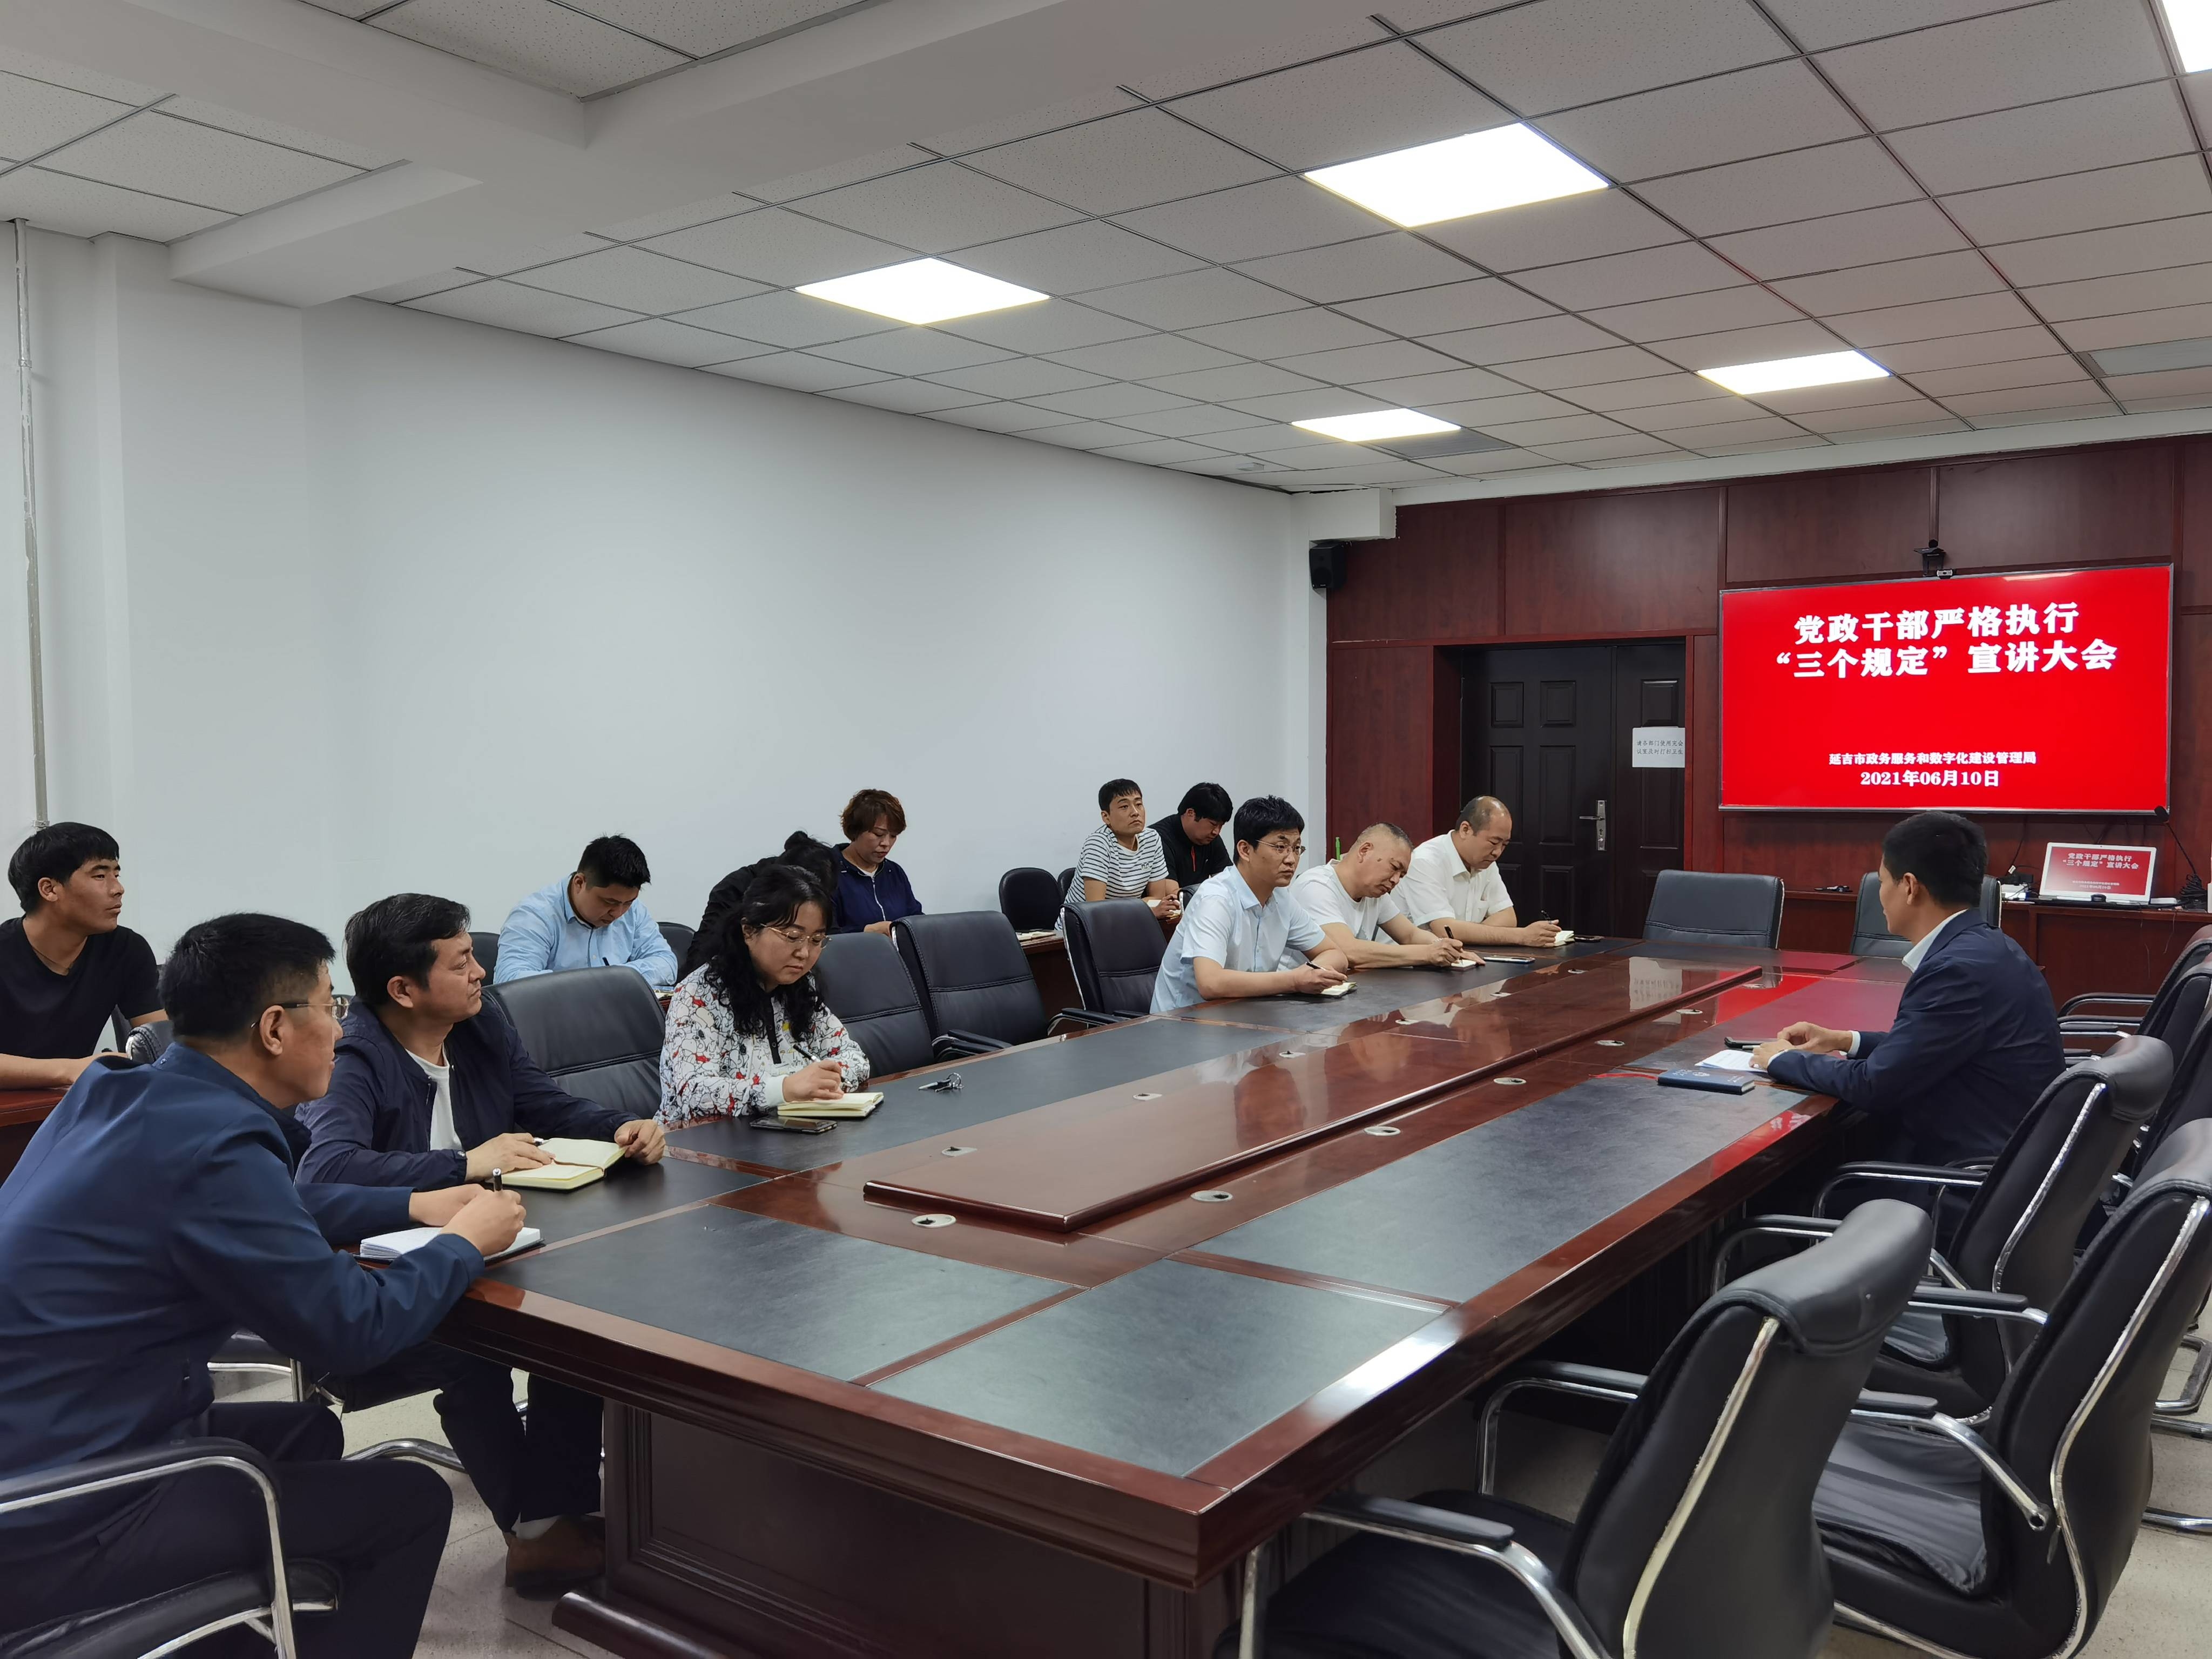 延吉市司法局开展防止干预司法“三个规定”宣讲活动